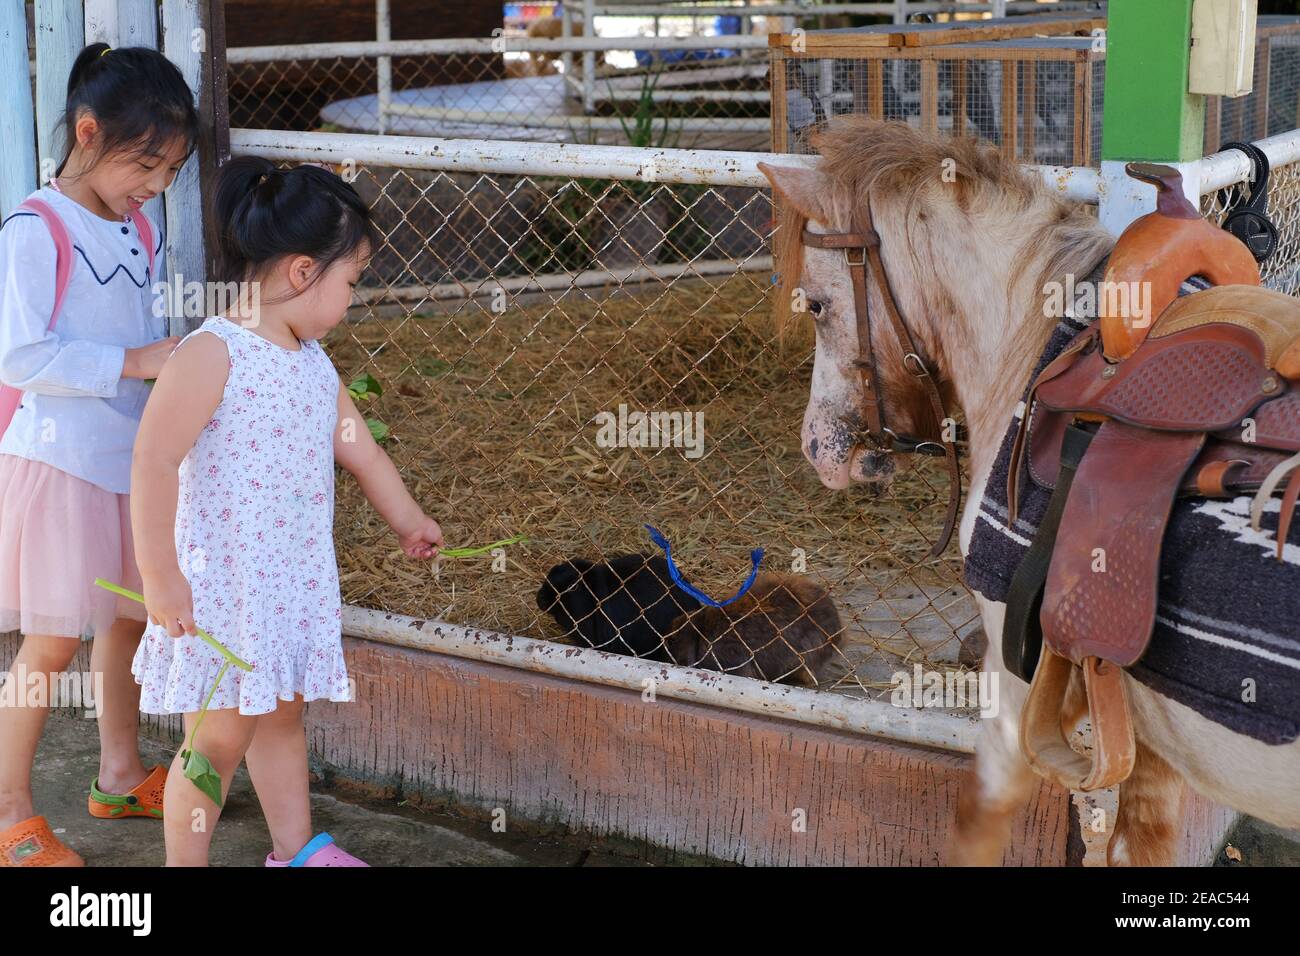 Deux jeunes filles asiatiques mignons nourrissent des légumes à un petit cheval et quelques lapins dans un zoo pour enfants. Banque D'Images